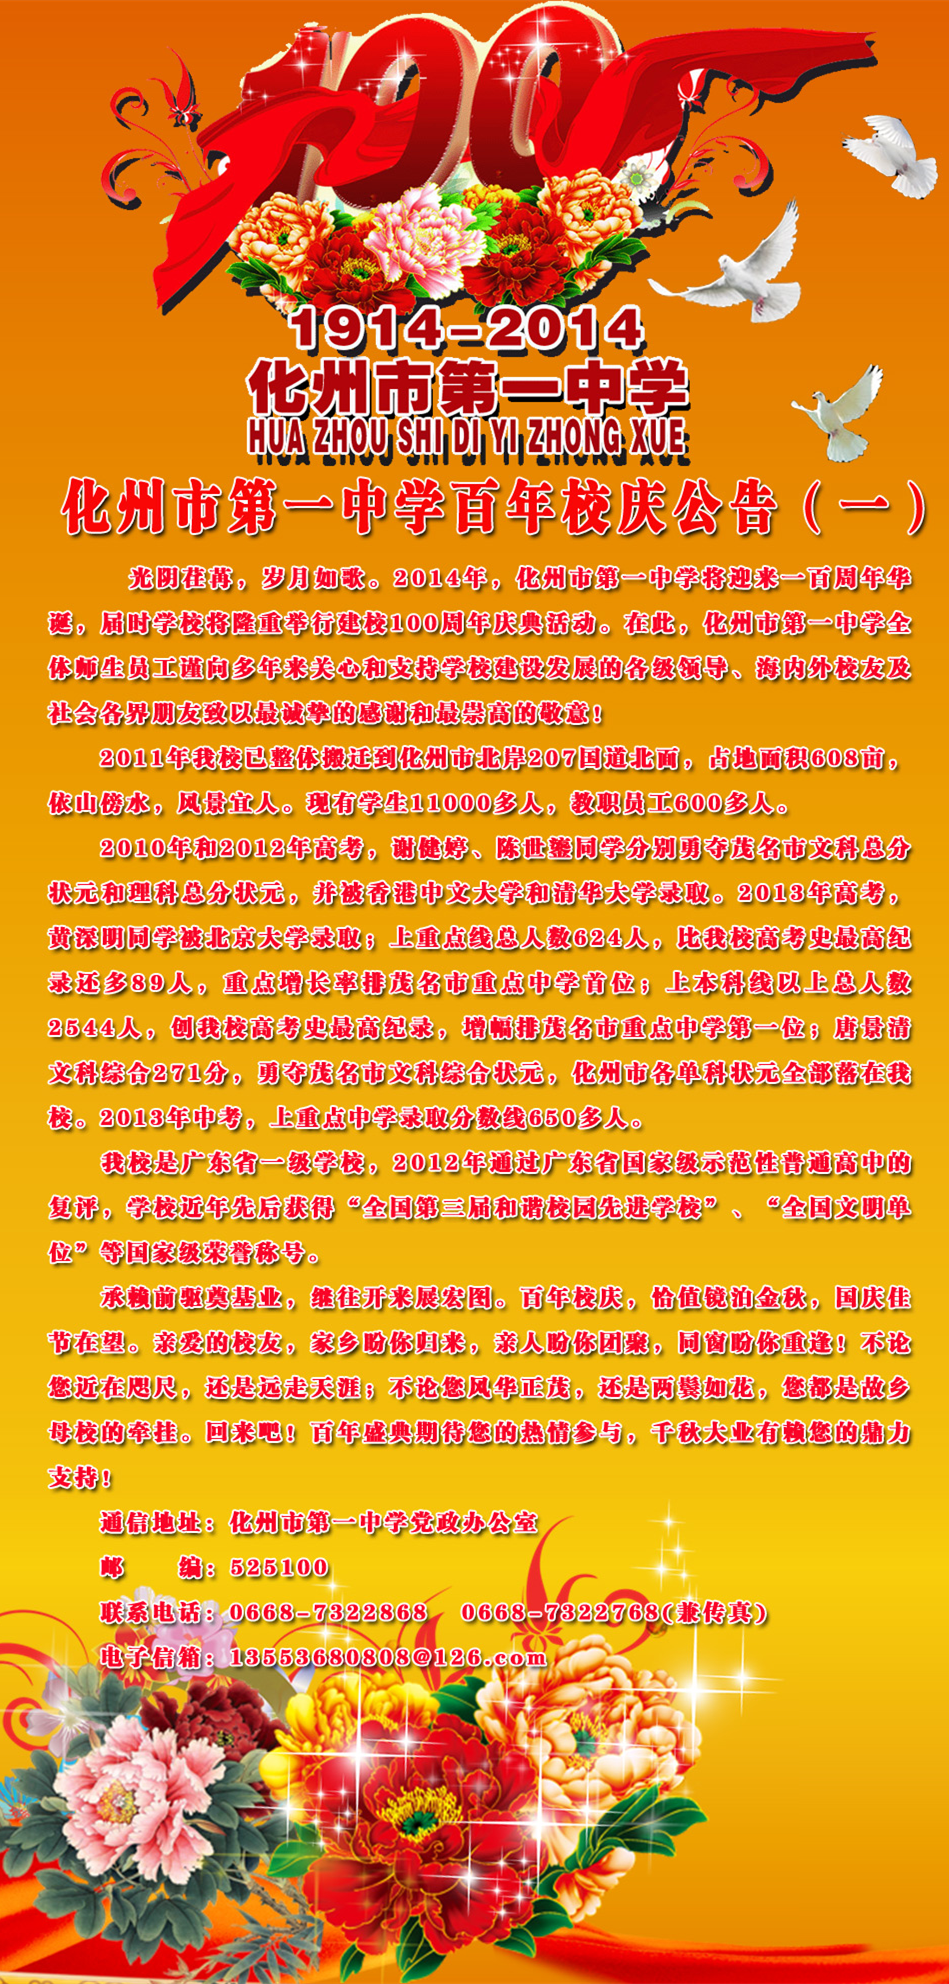 1914~2014，化州市第一中学百年校庆活动通知 - 化州信息网 - 化州信息网